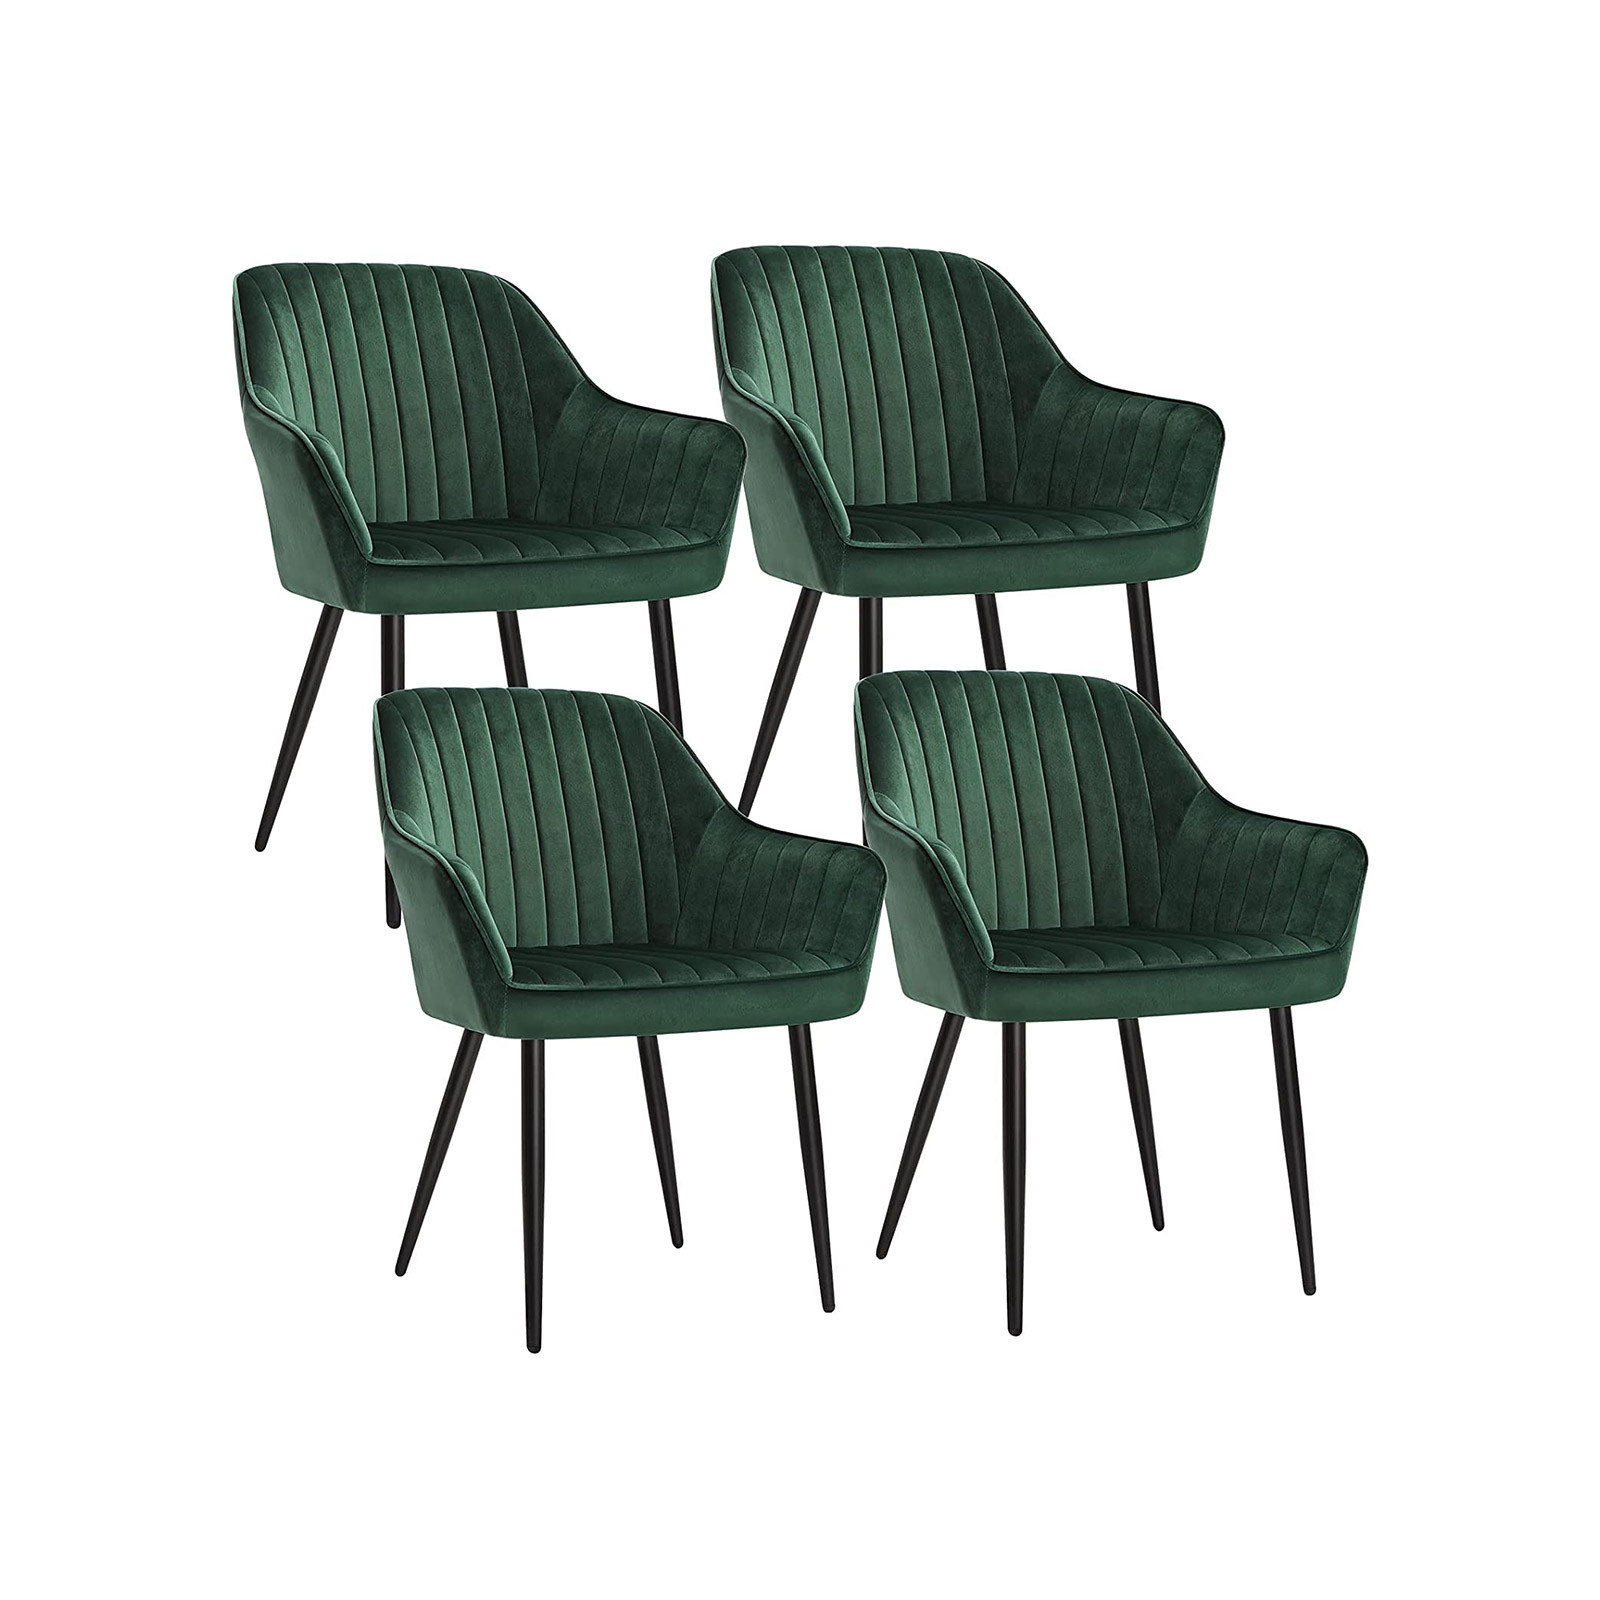 Set štyroch jedálenských stoličiek  LDC087C01-4 (4 ks)